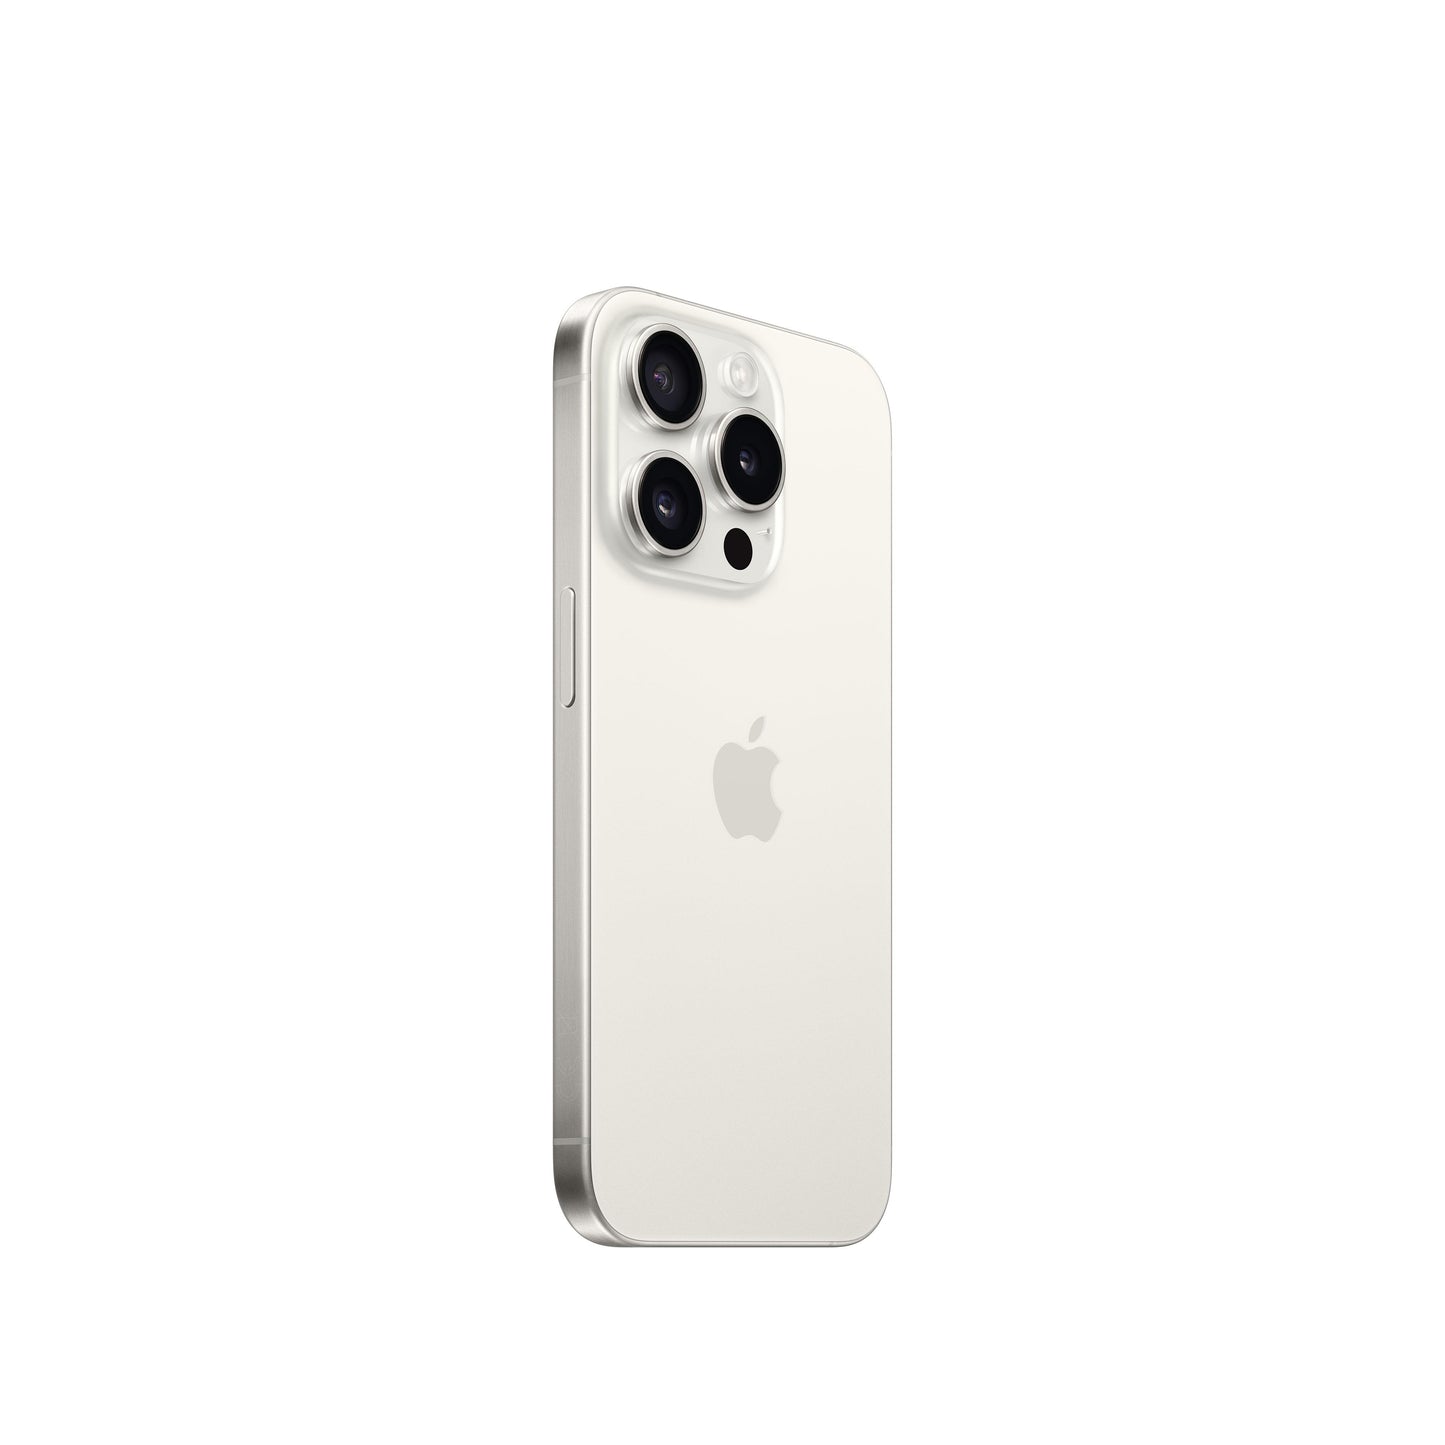 iPhone 15 Pro 512 GB Titanio blanco